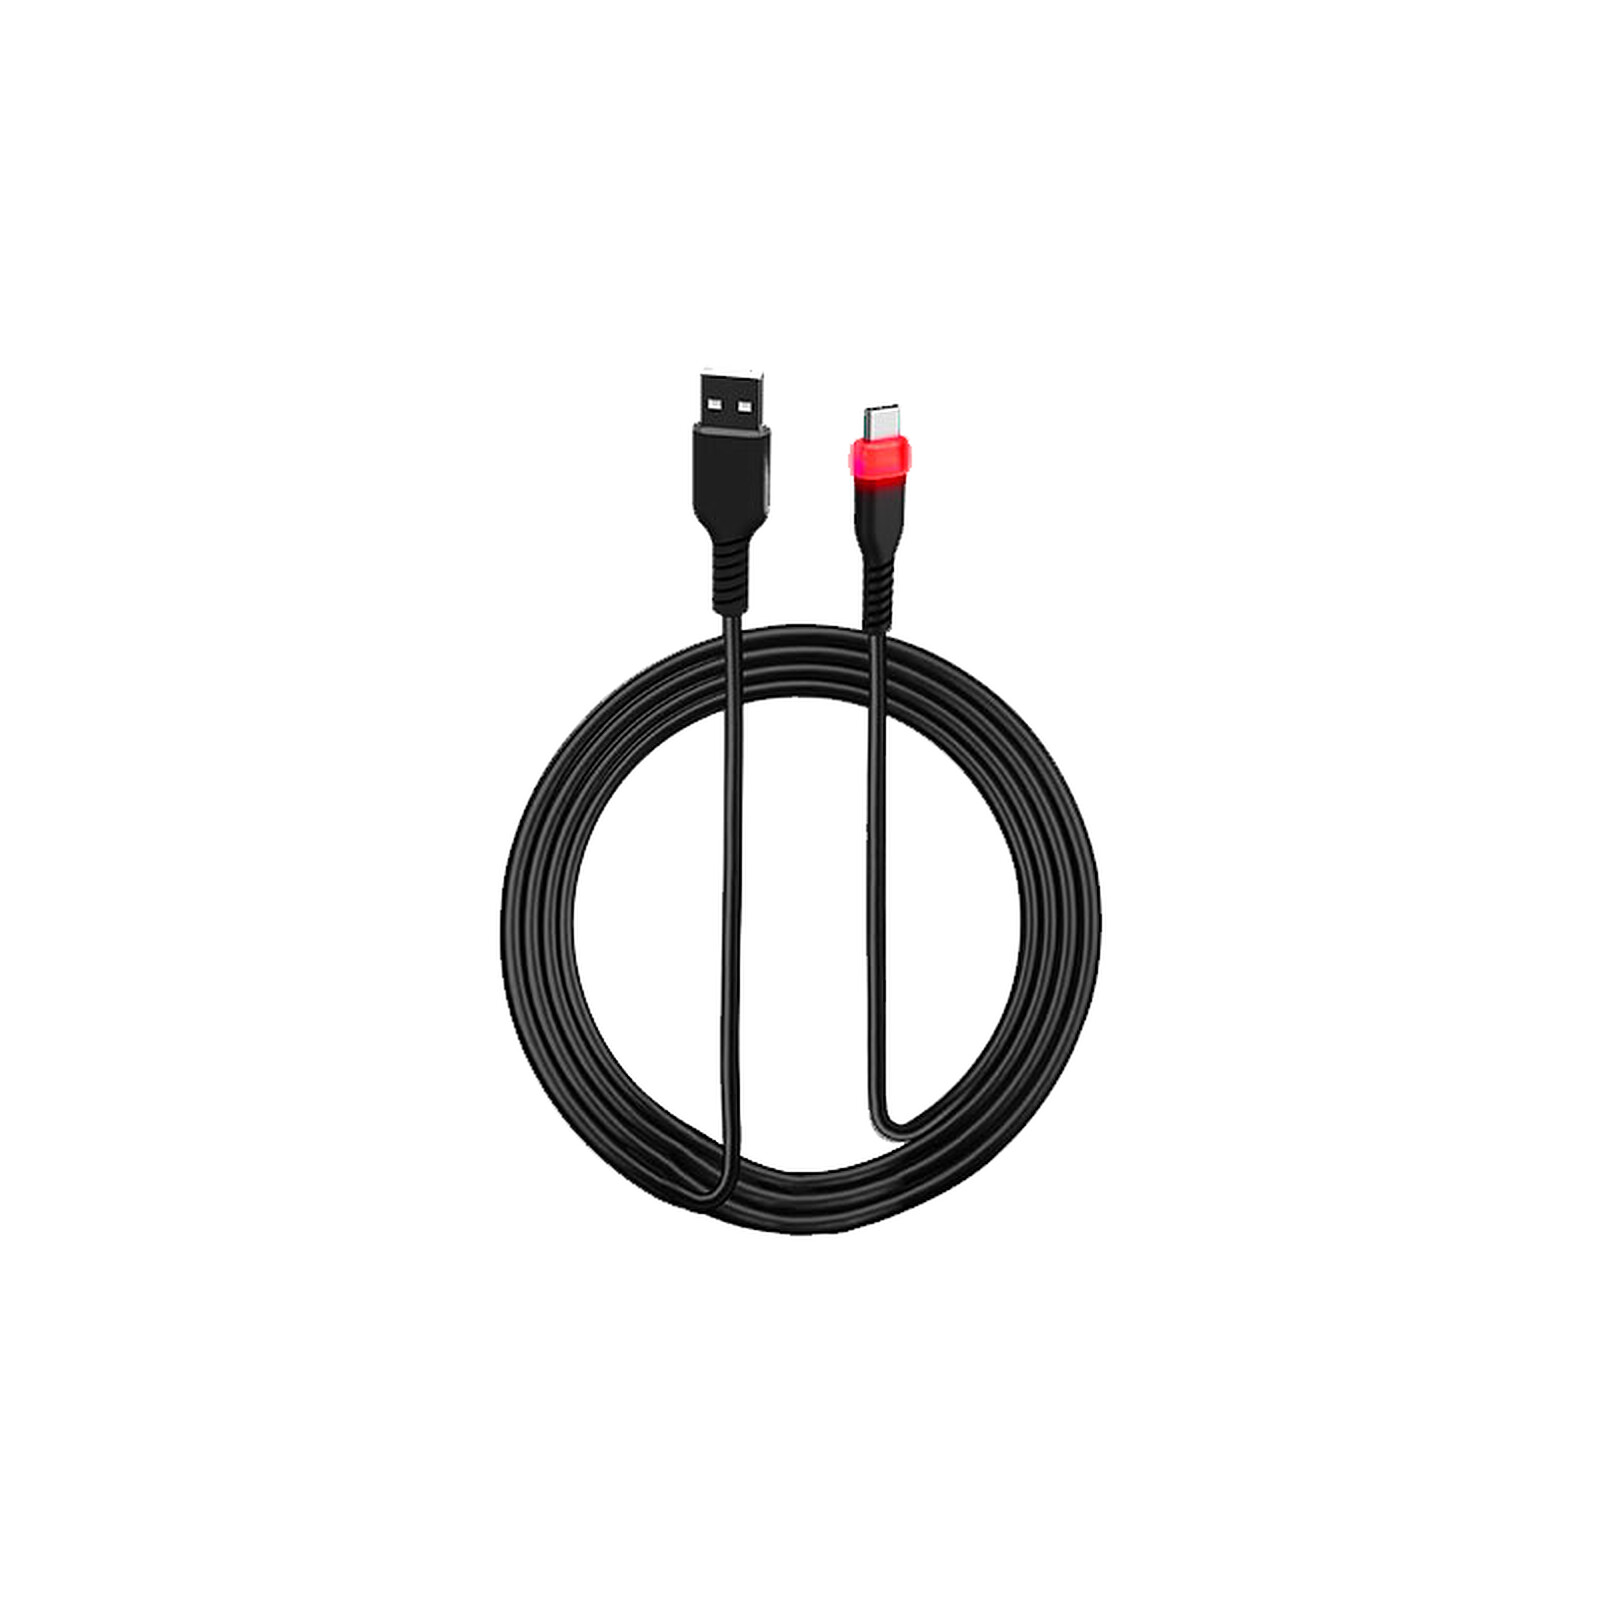 snakebyte - Socle de chargement pour 2 manettes PS5 - Accessoires PS5 - LDLC